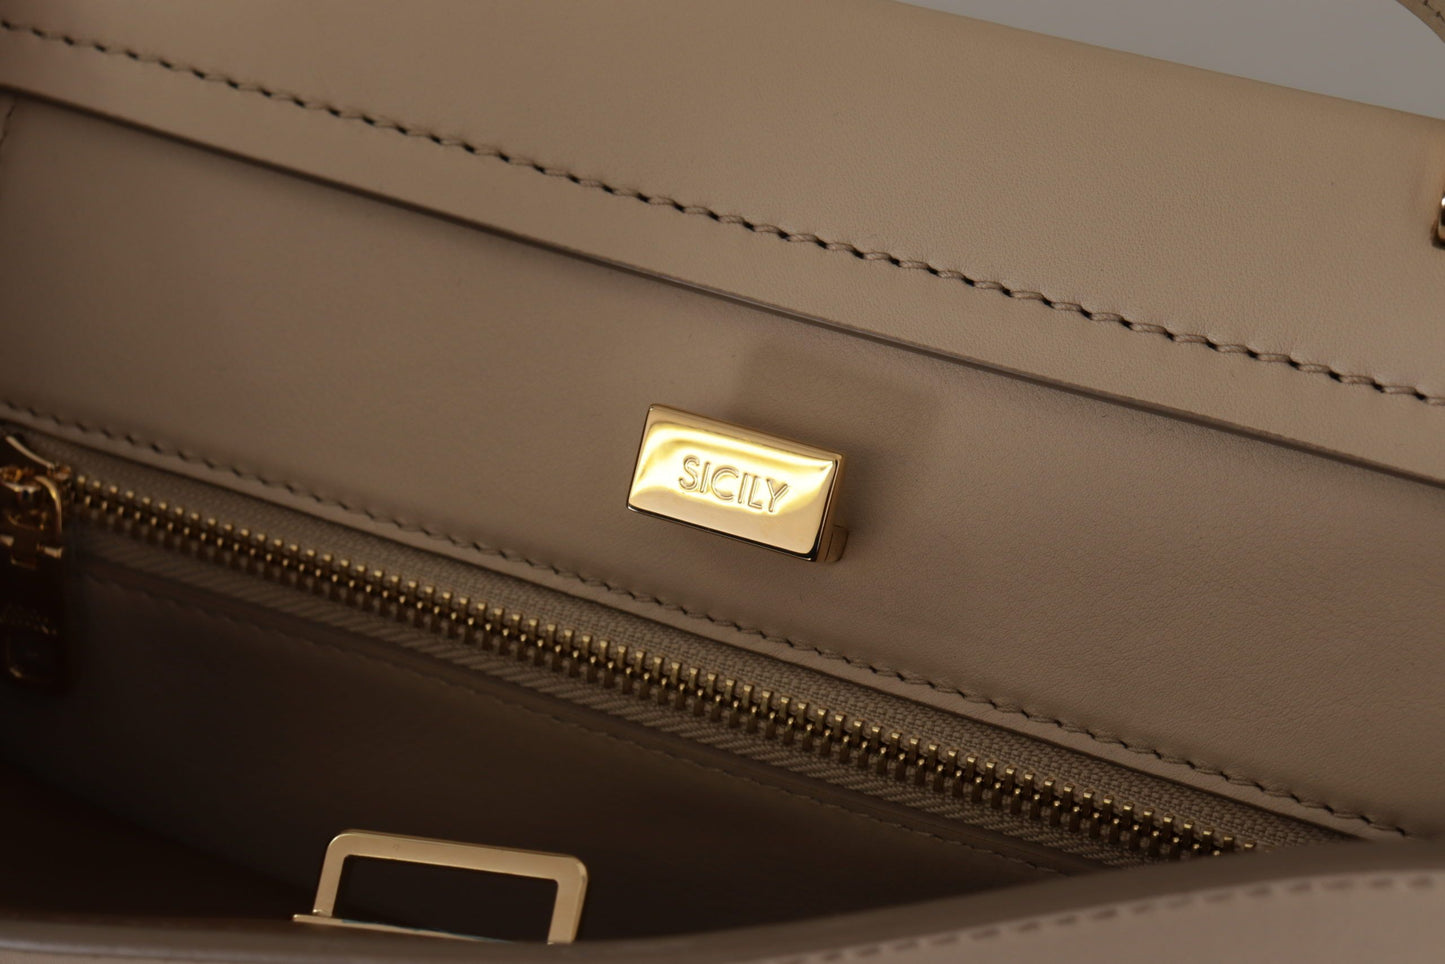 Elegant Beige Sicily Leather Shoulder Bag